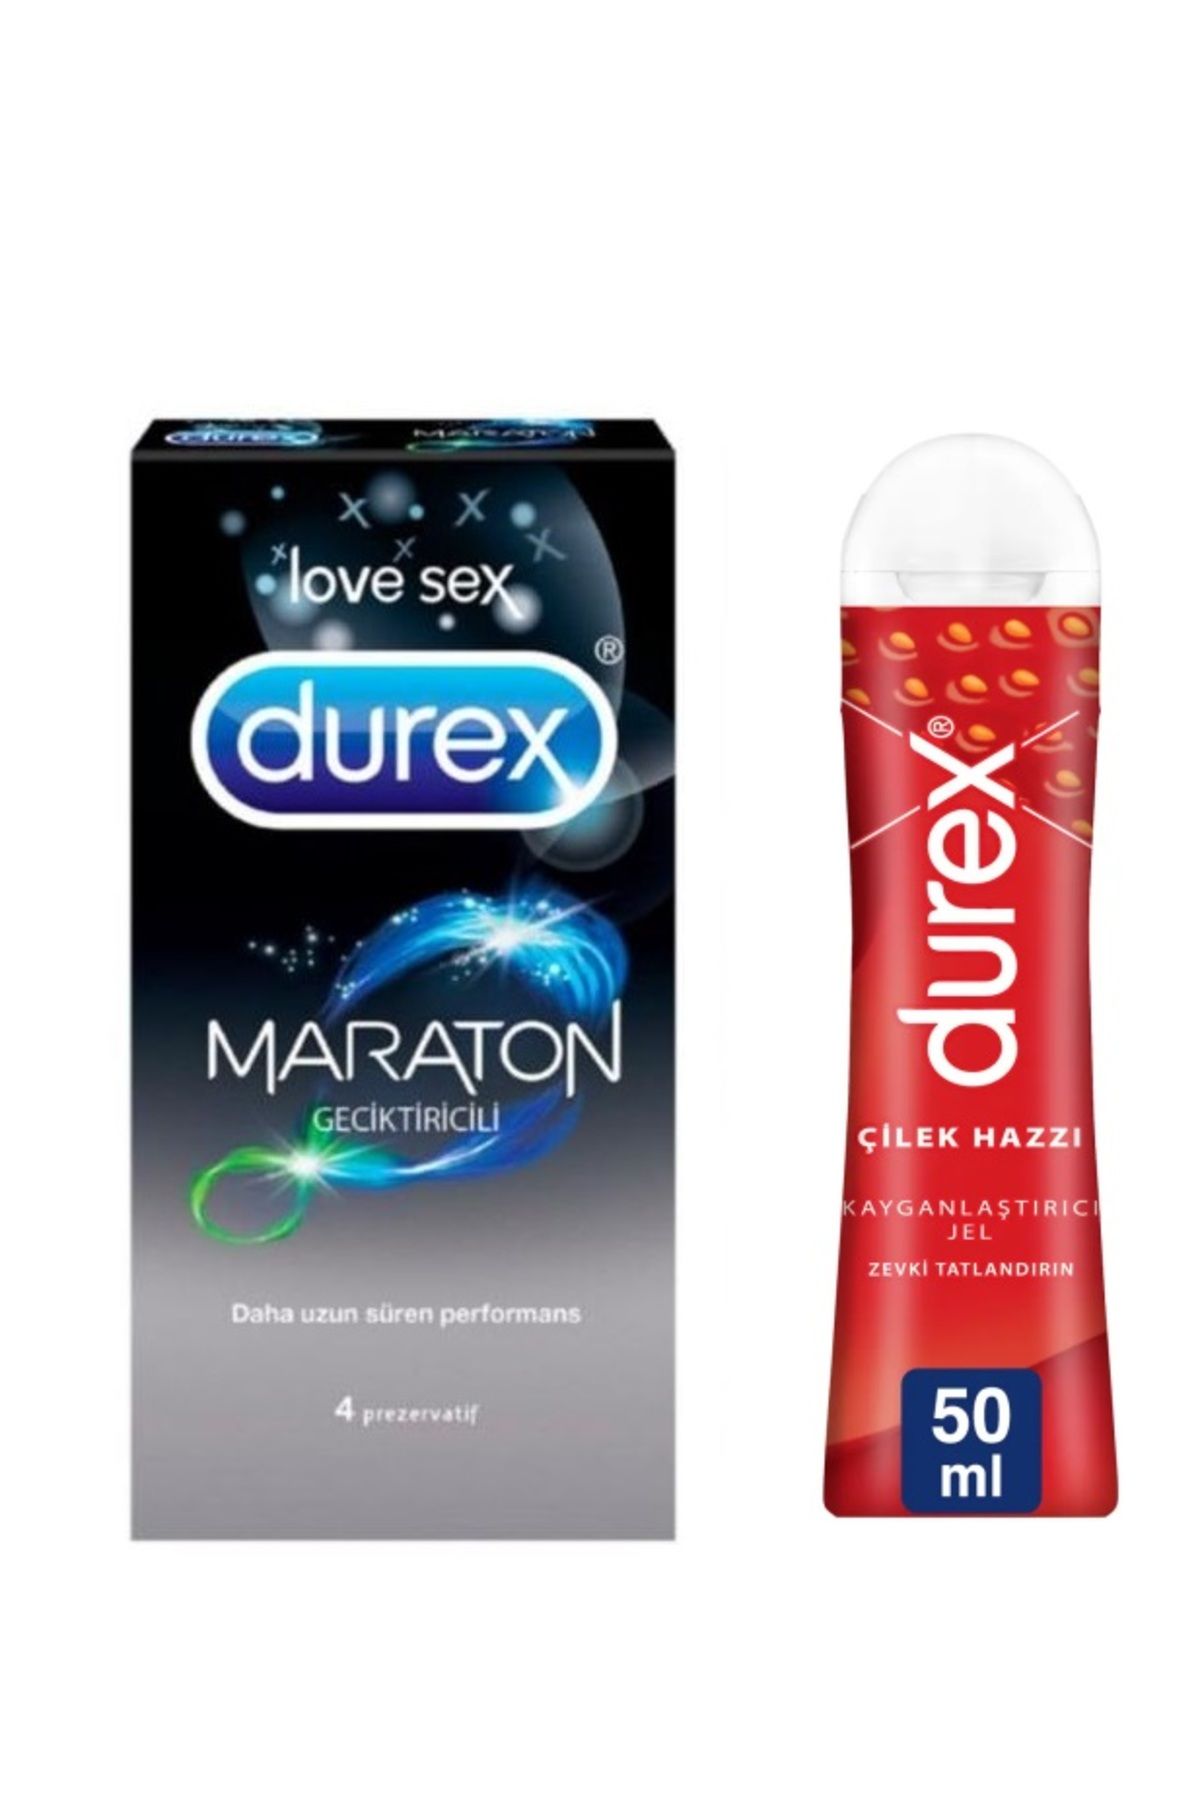 Durex Maraton Tırtıklı Prezervatif 4'lü + Durex Çilek Hazzı Jel 50 ml